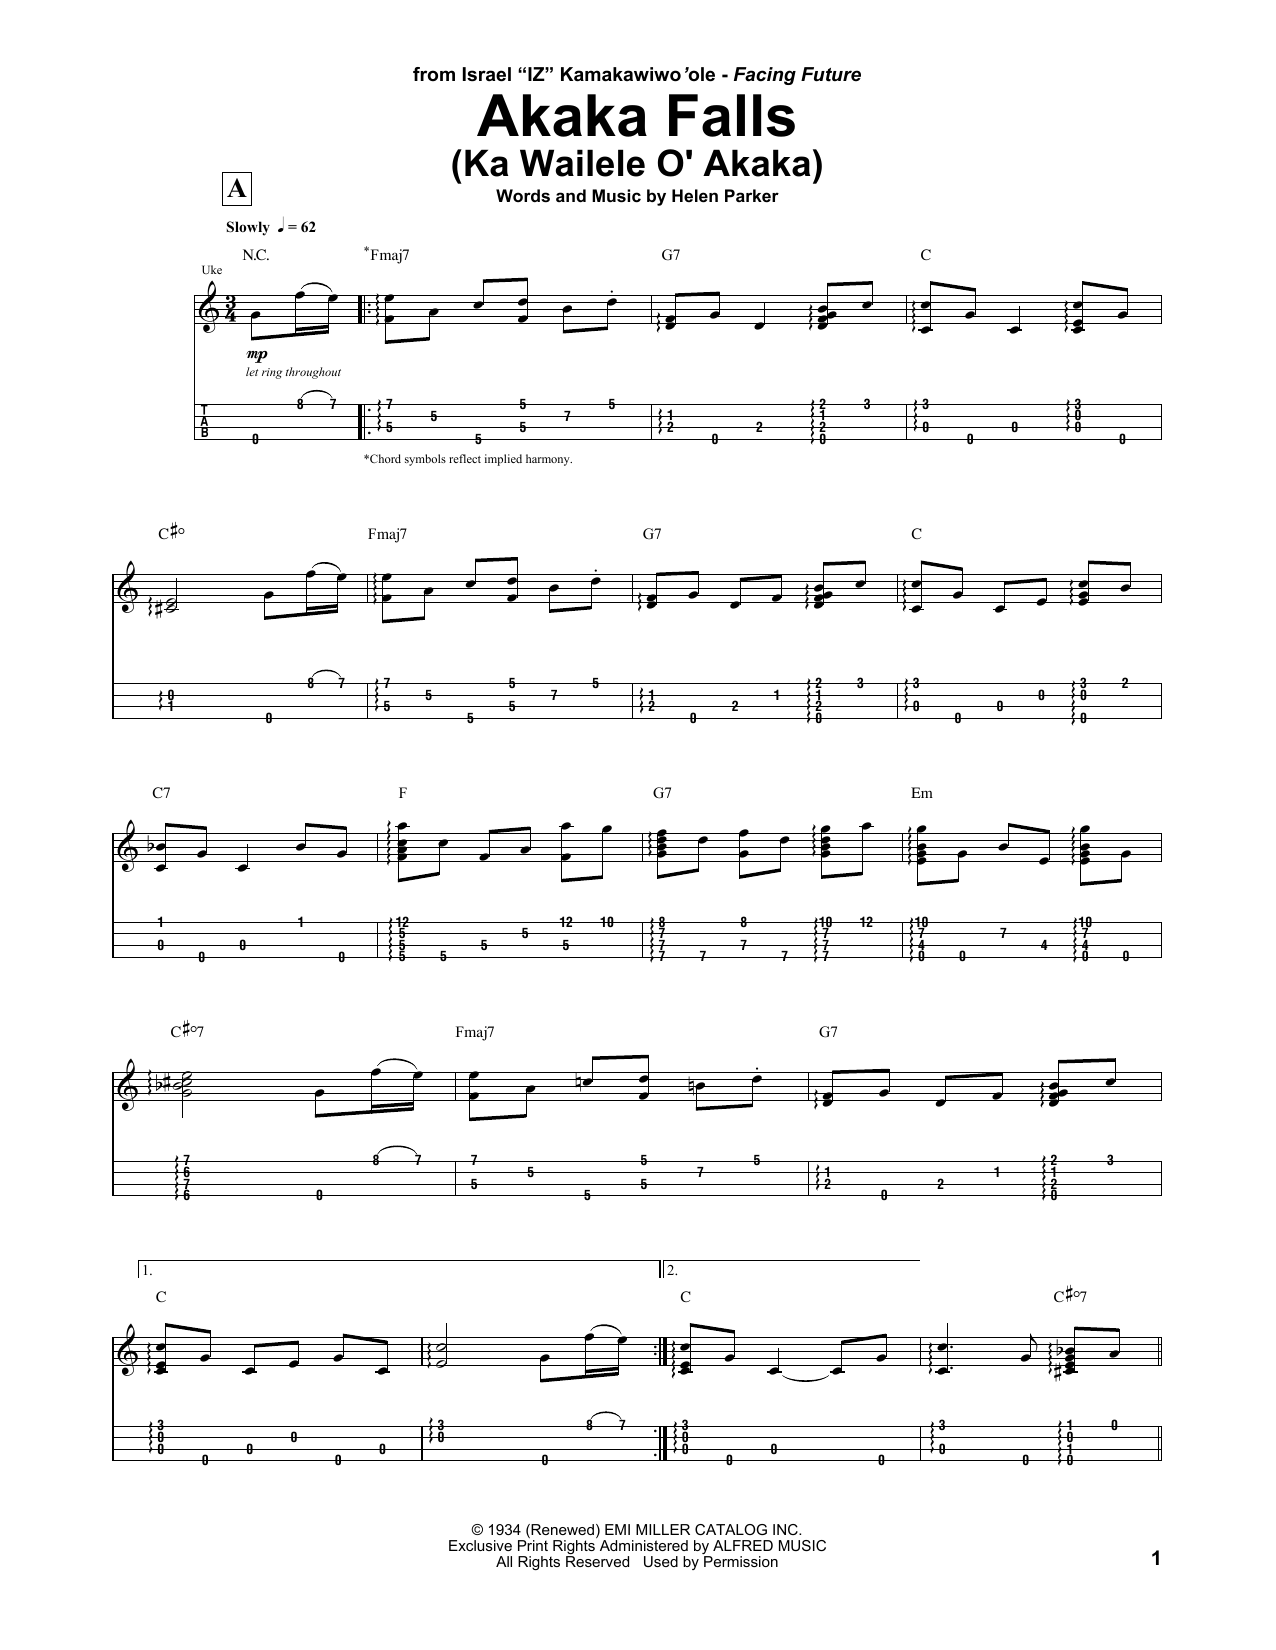 Jake Shimabukuro Akaka Falls (Ka Wailele O' Akaka) Sheet Music Notes & Chords for UKETAB - Download or Print PDF